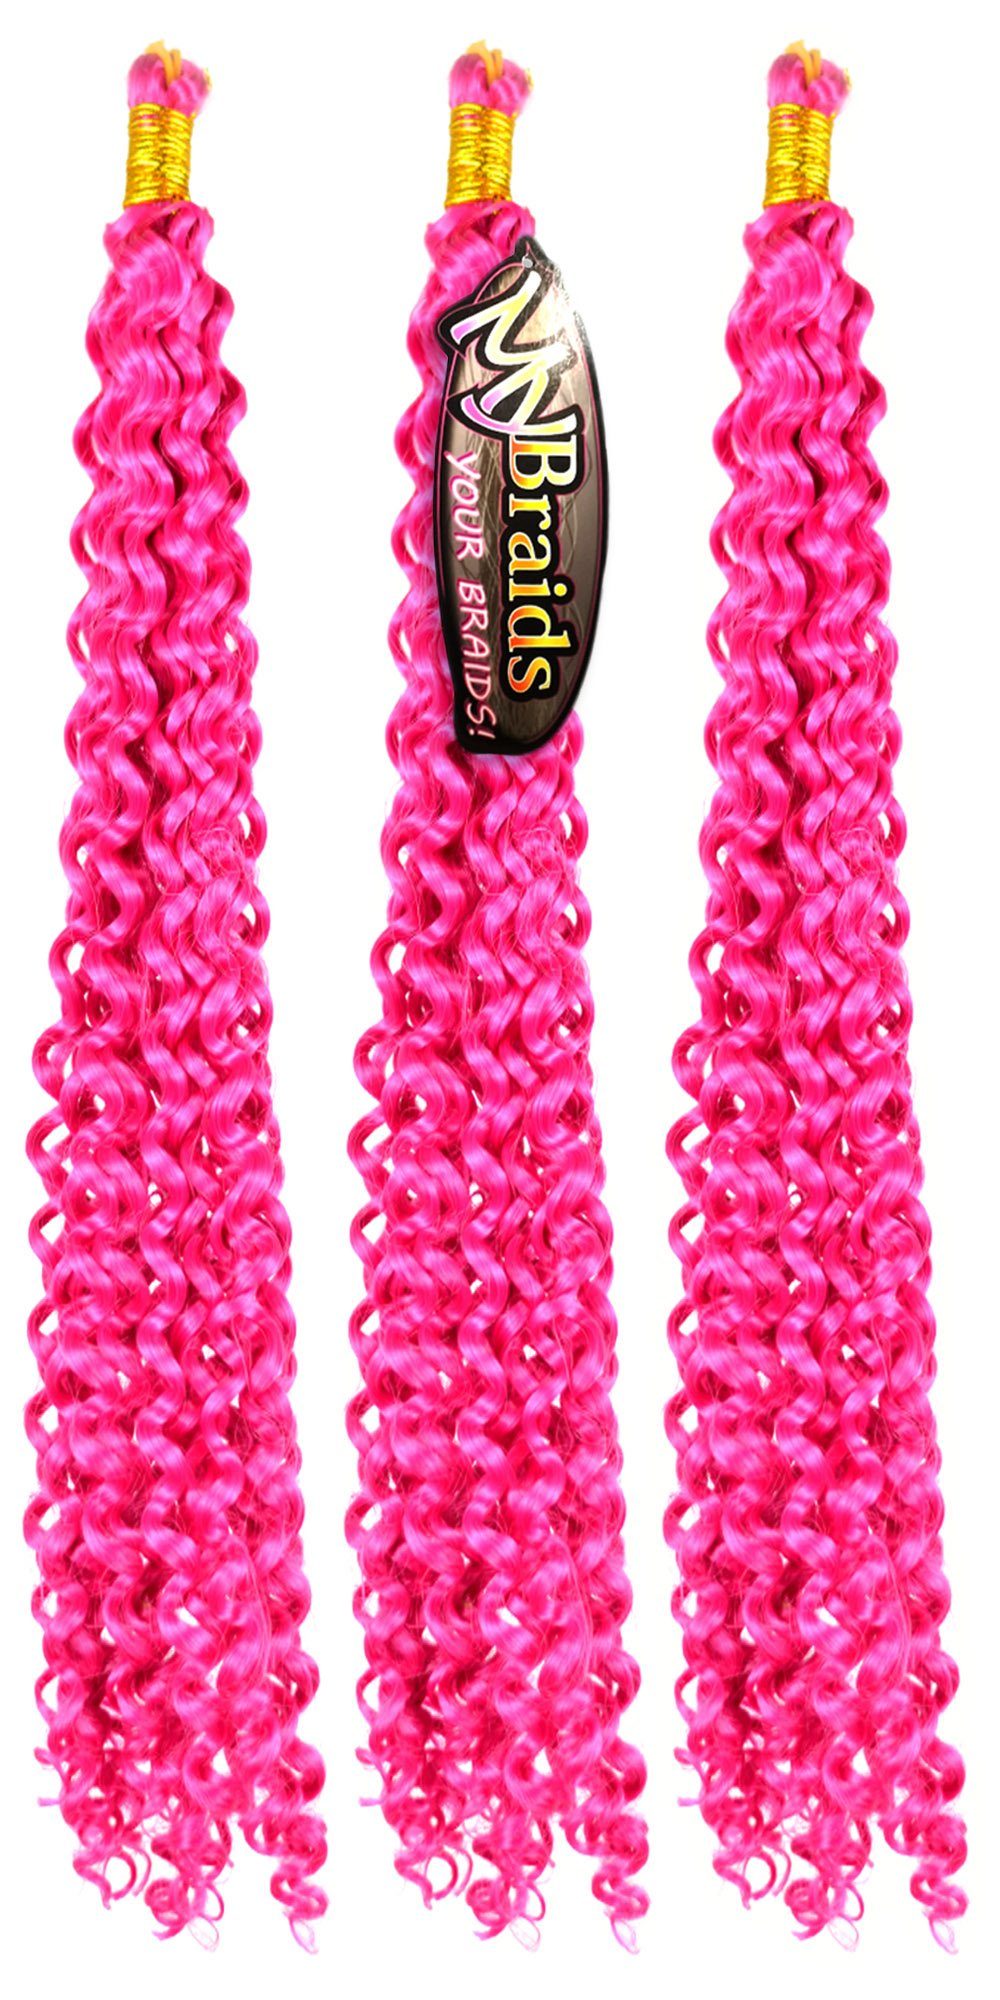 MyBraids YOUR BRAIDS! Kunsthaar-Extension Deep Wave Crochet Braids 3er Pack Flechthaar Zöpfe Wellig 12-W Fuchsia